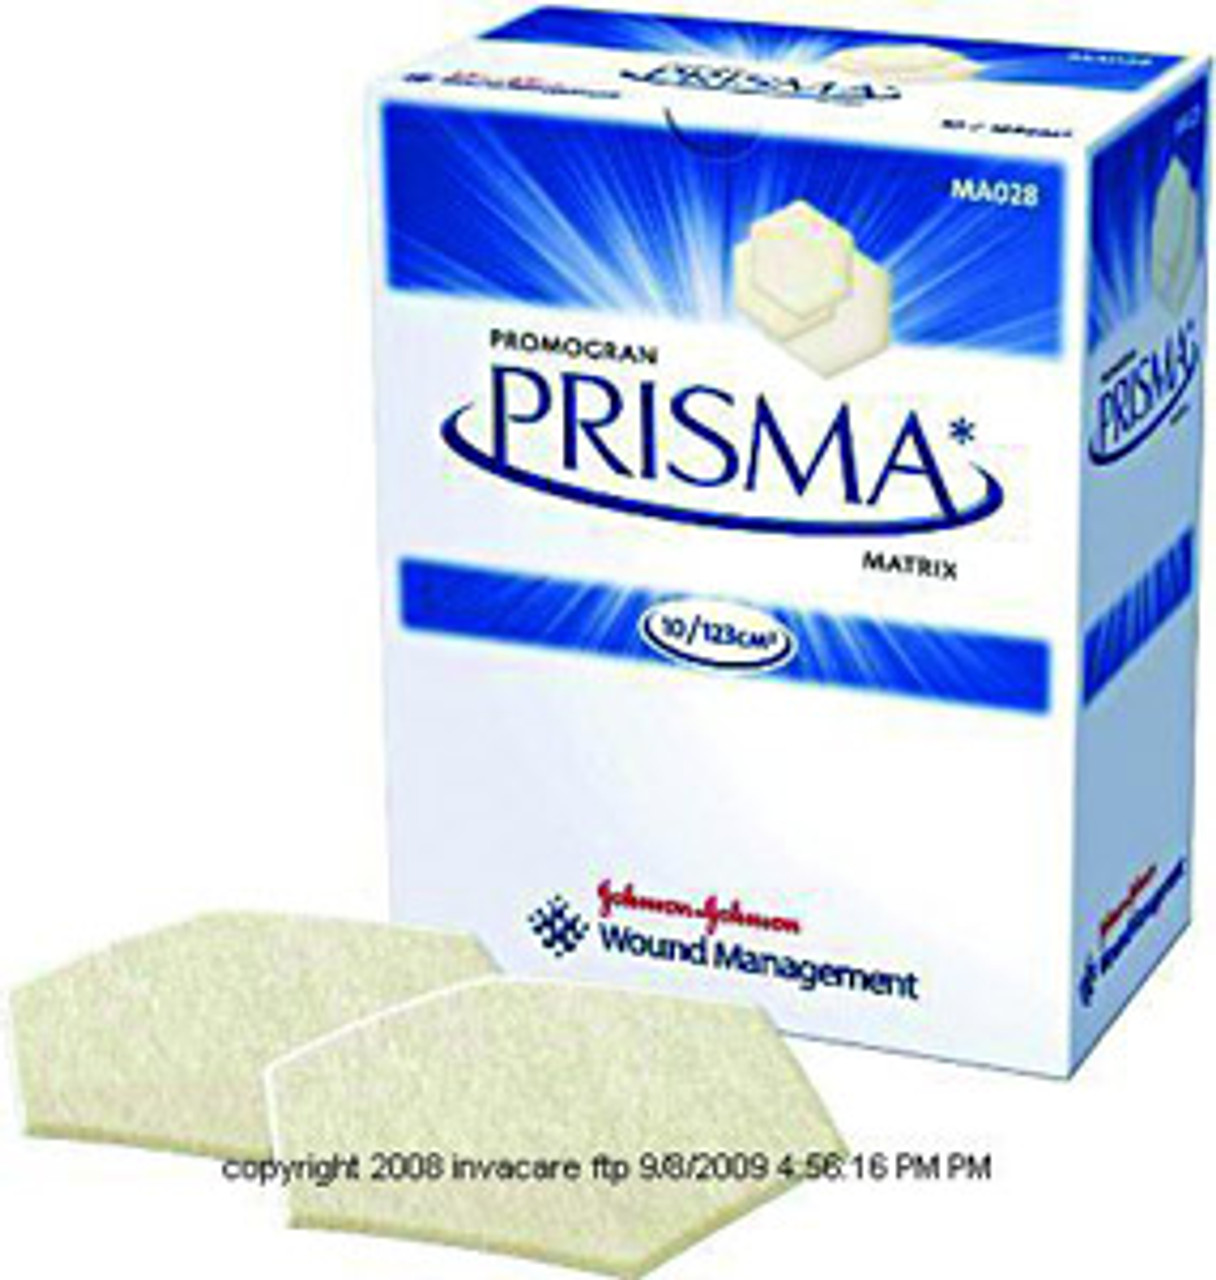 PROMOGRAN® PRISMA® Matrix JNJMA028EA